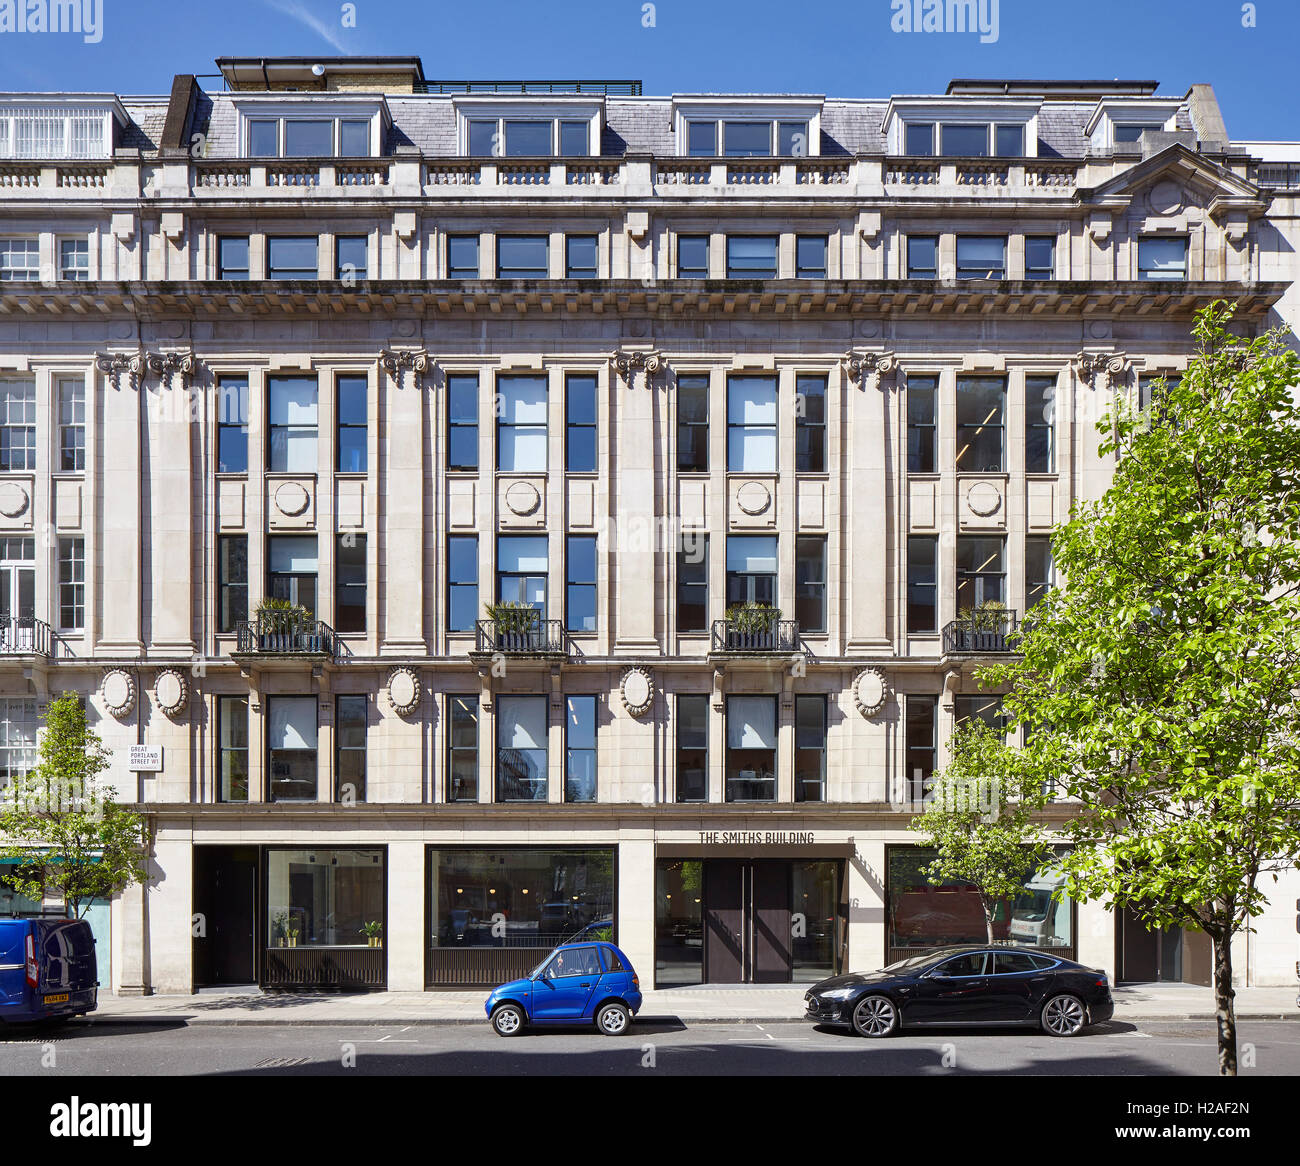 Vista general de la calle al sol, mostrando la fachada de principios del siglo xx. El Smiths Building, Londres, Reino Unido. Arquitecto: dureza + Trevillion arquitectos, 2016. Foto de stock